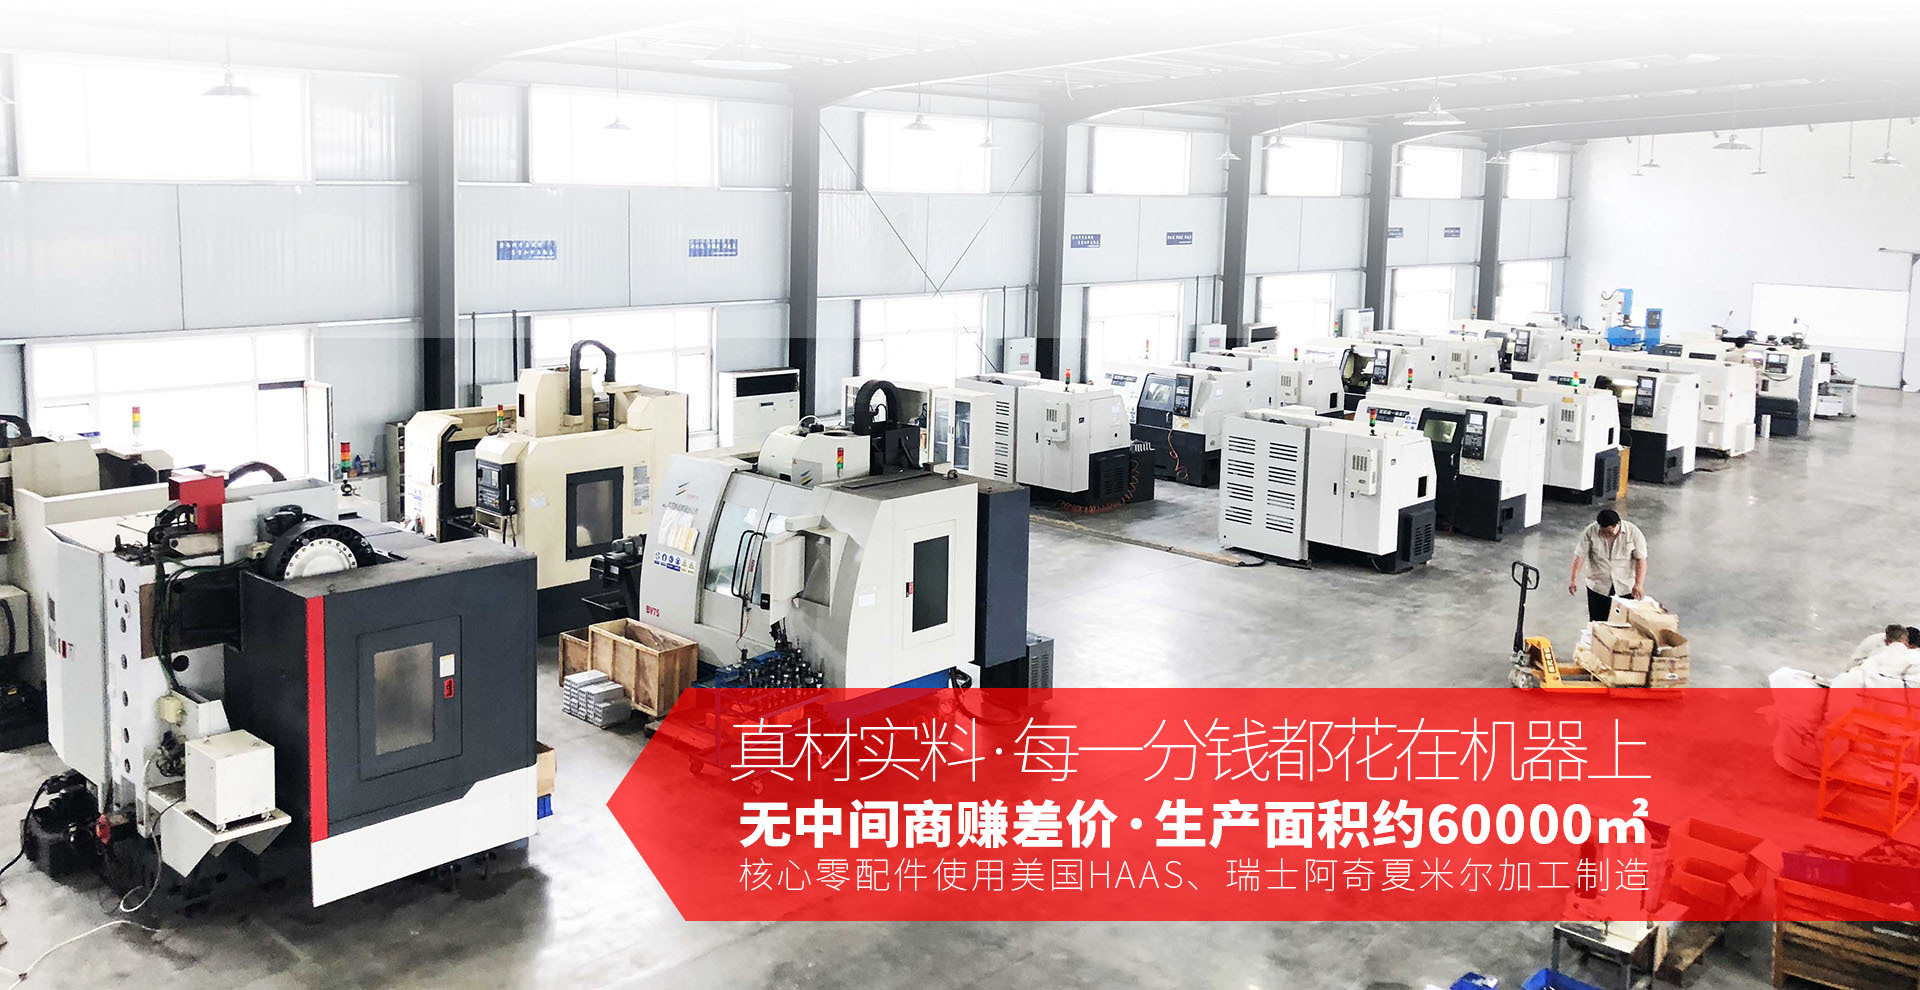 京华派克邯郸聚合机械设备有限公司